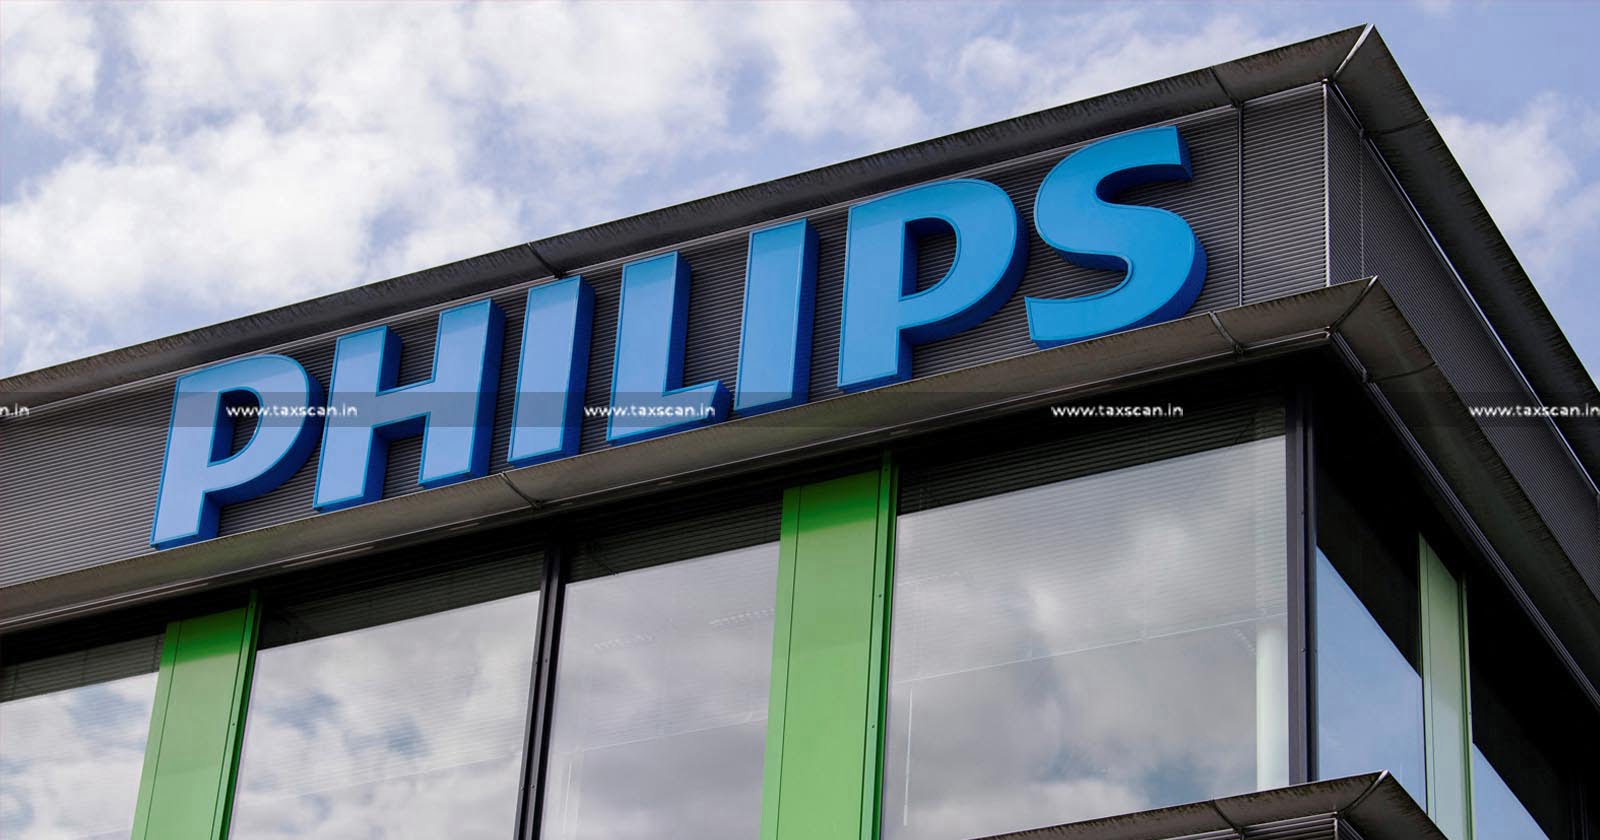 MBA Vacancy in Philips - CA Vacancy in Philips - CA hiring in Philips - CA opportunities in Philips - taxscan